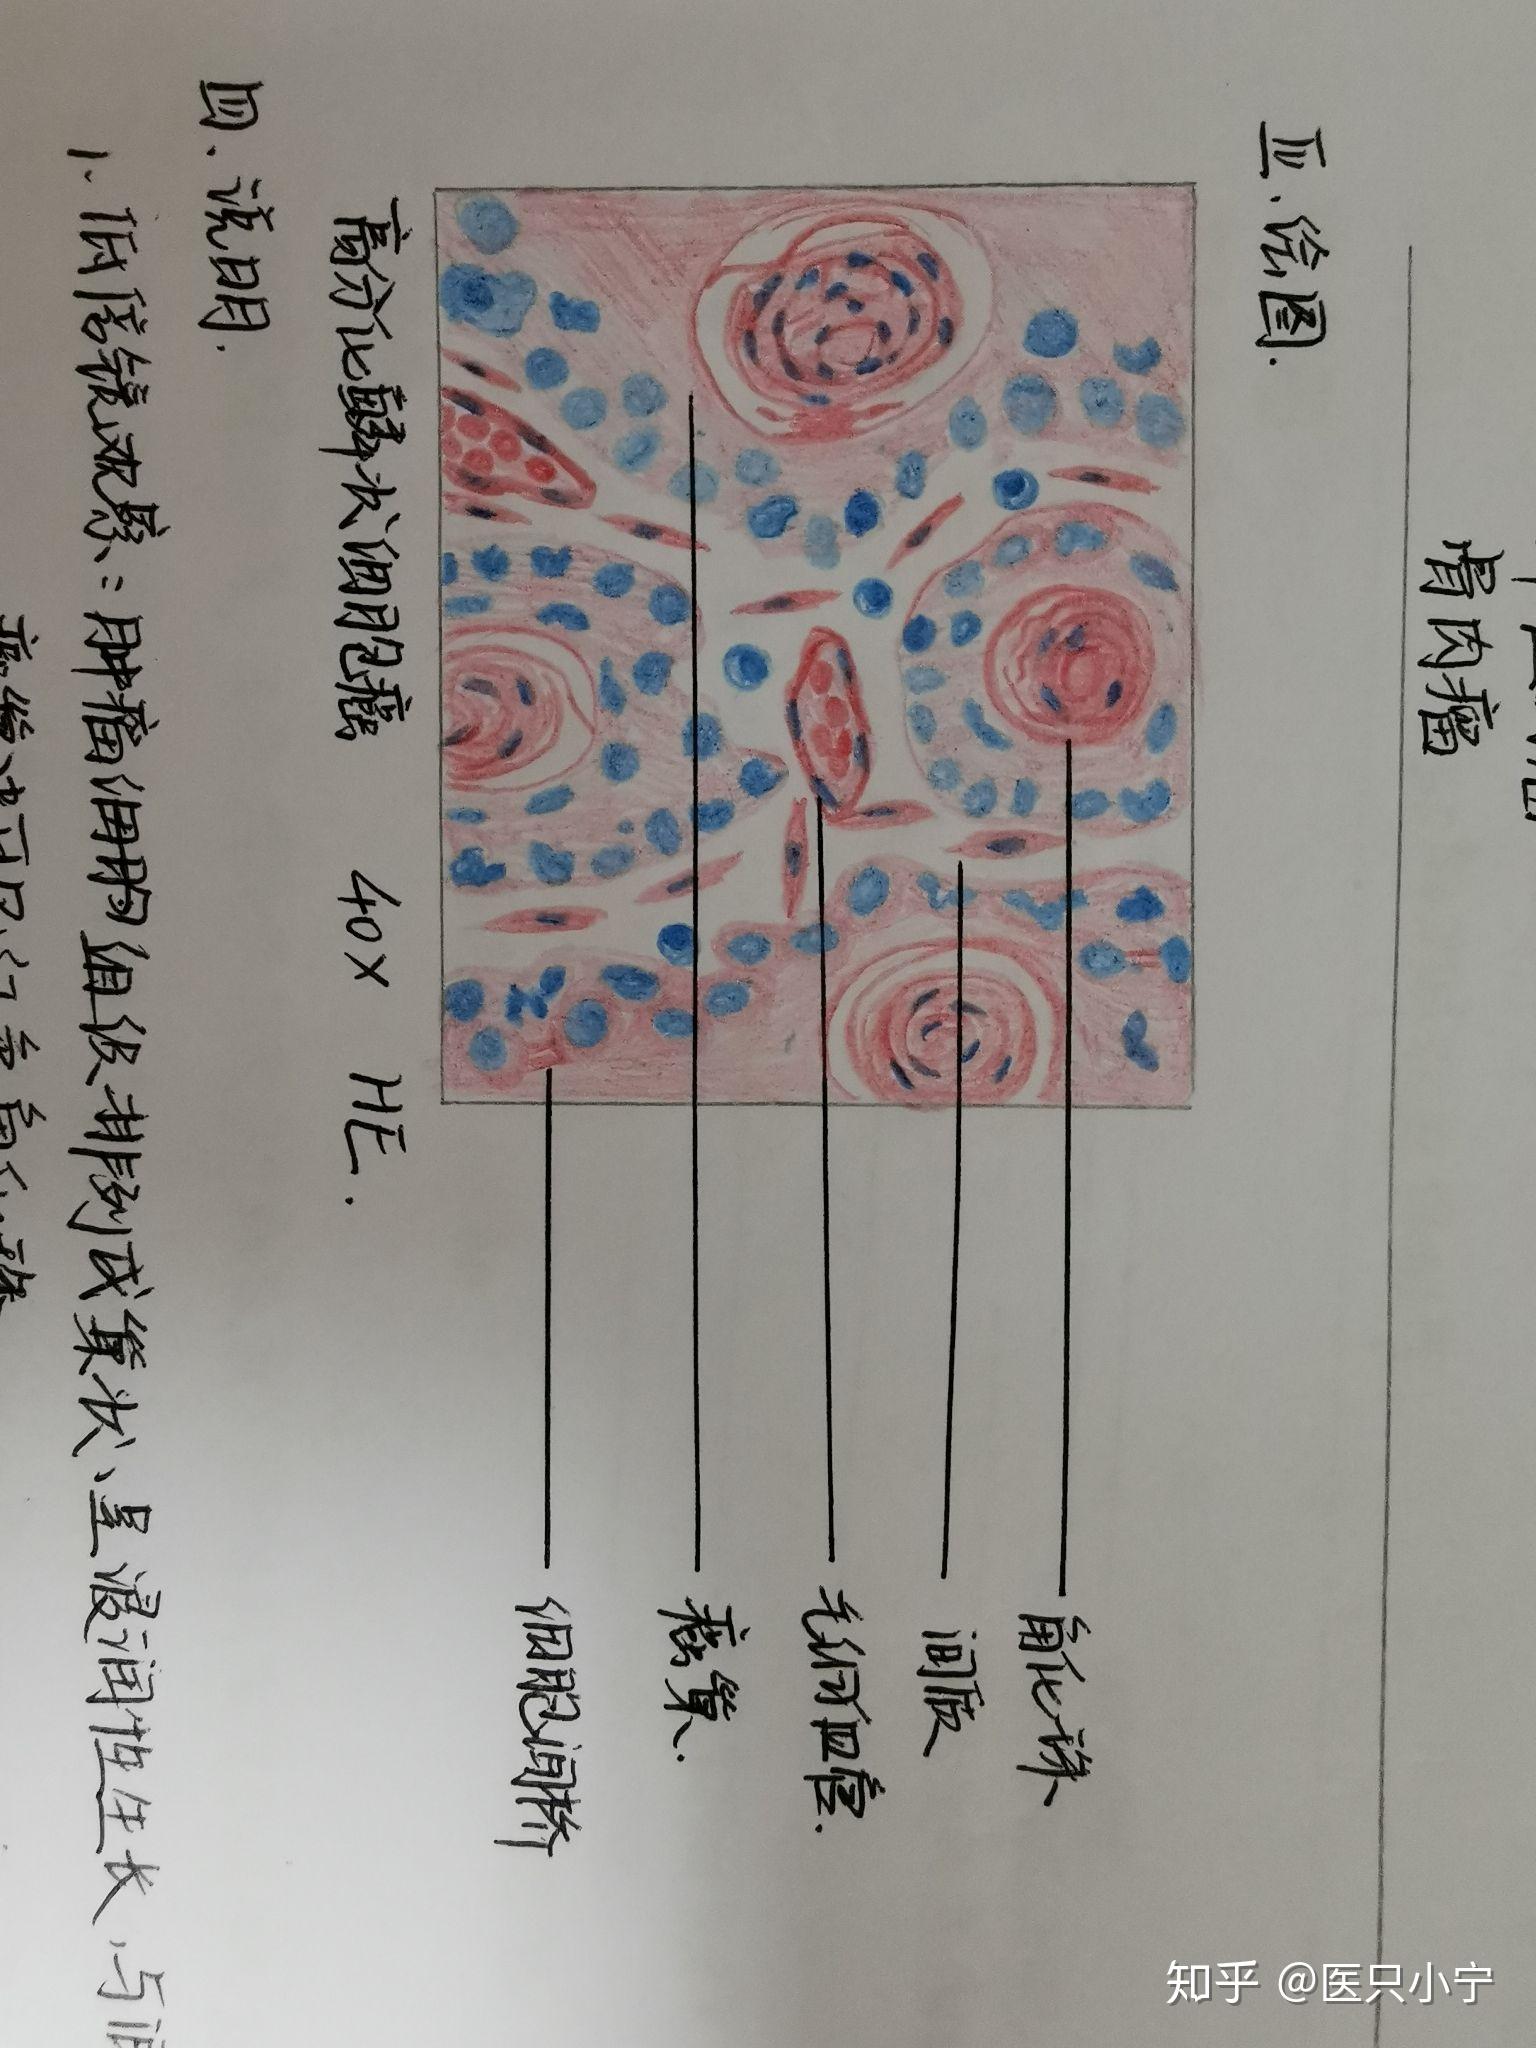 异物巨细胞红蓝铅笔图图片